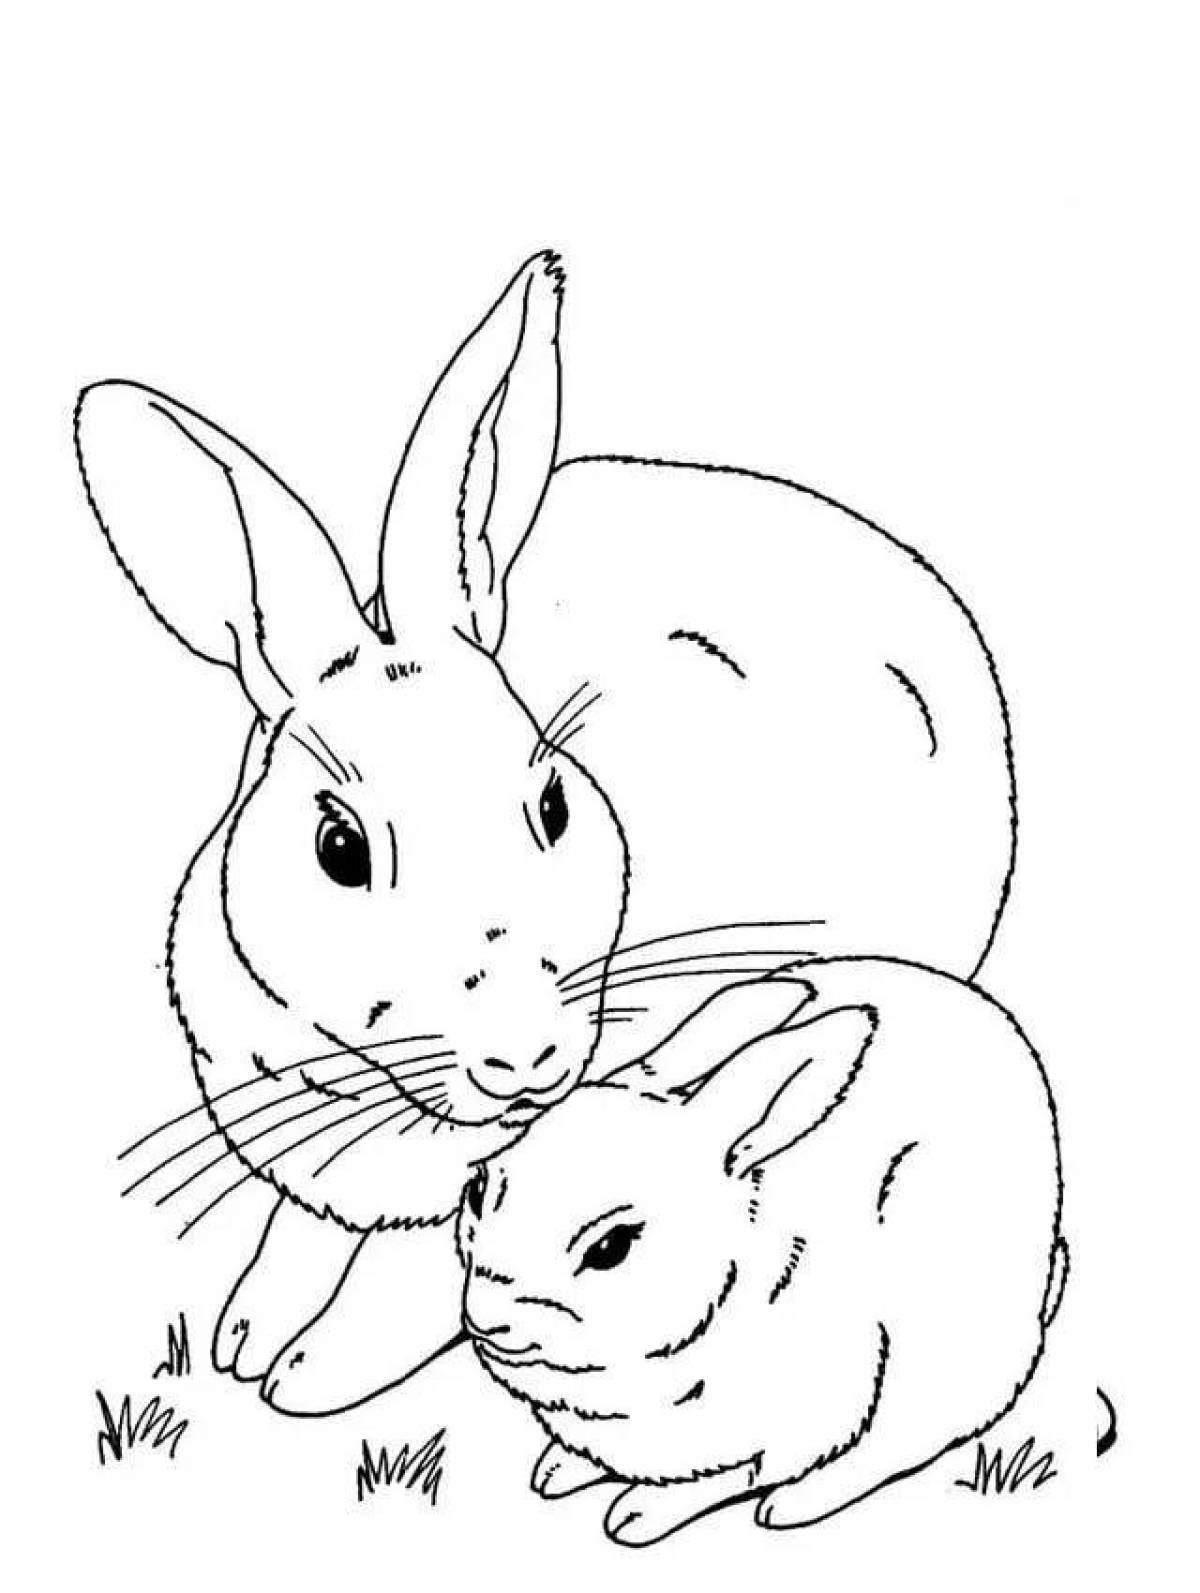 Playful rabbit coloring book